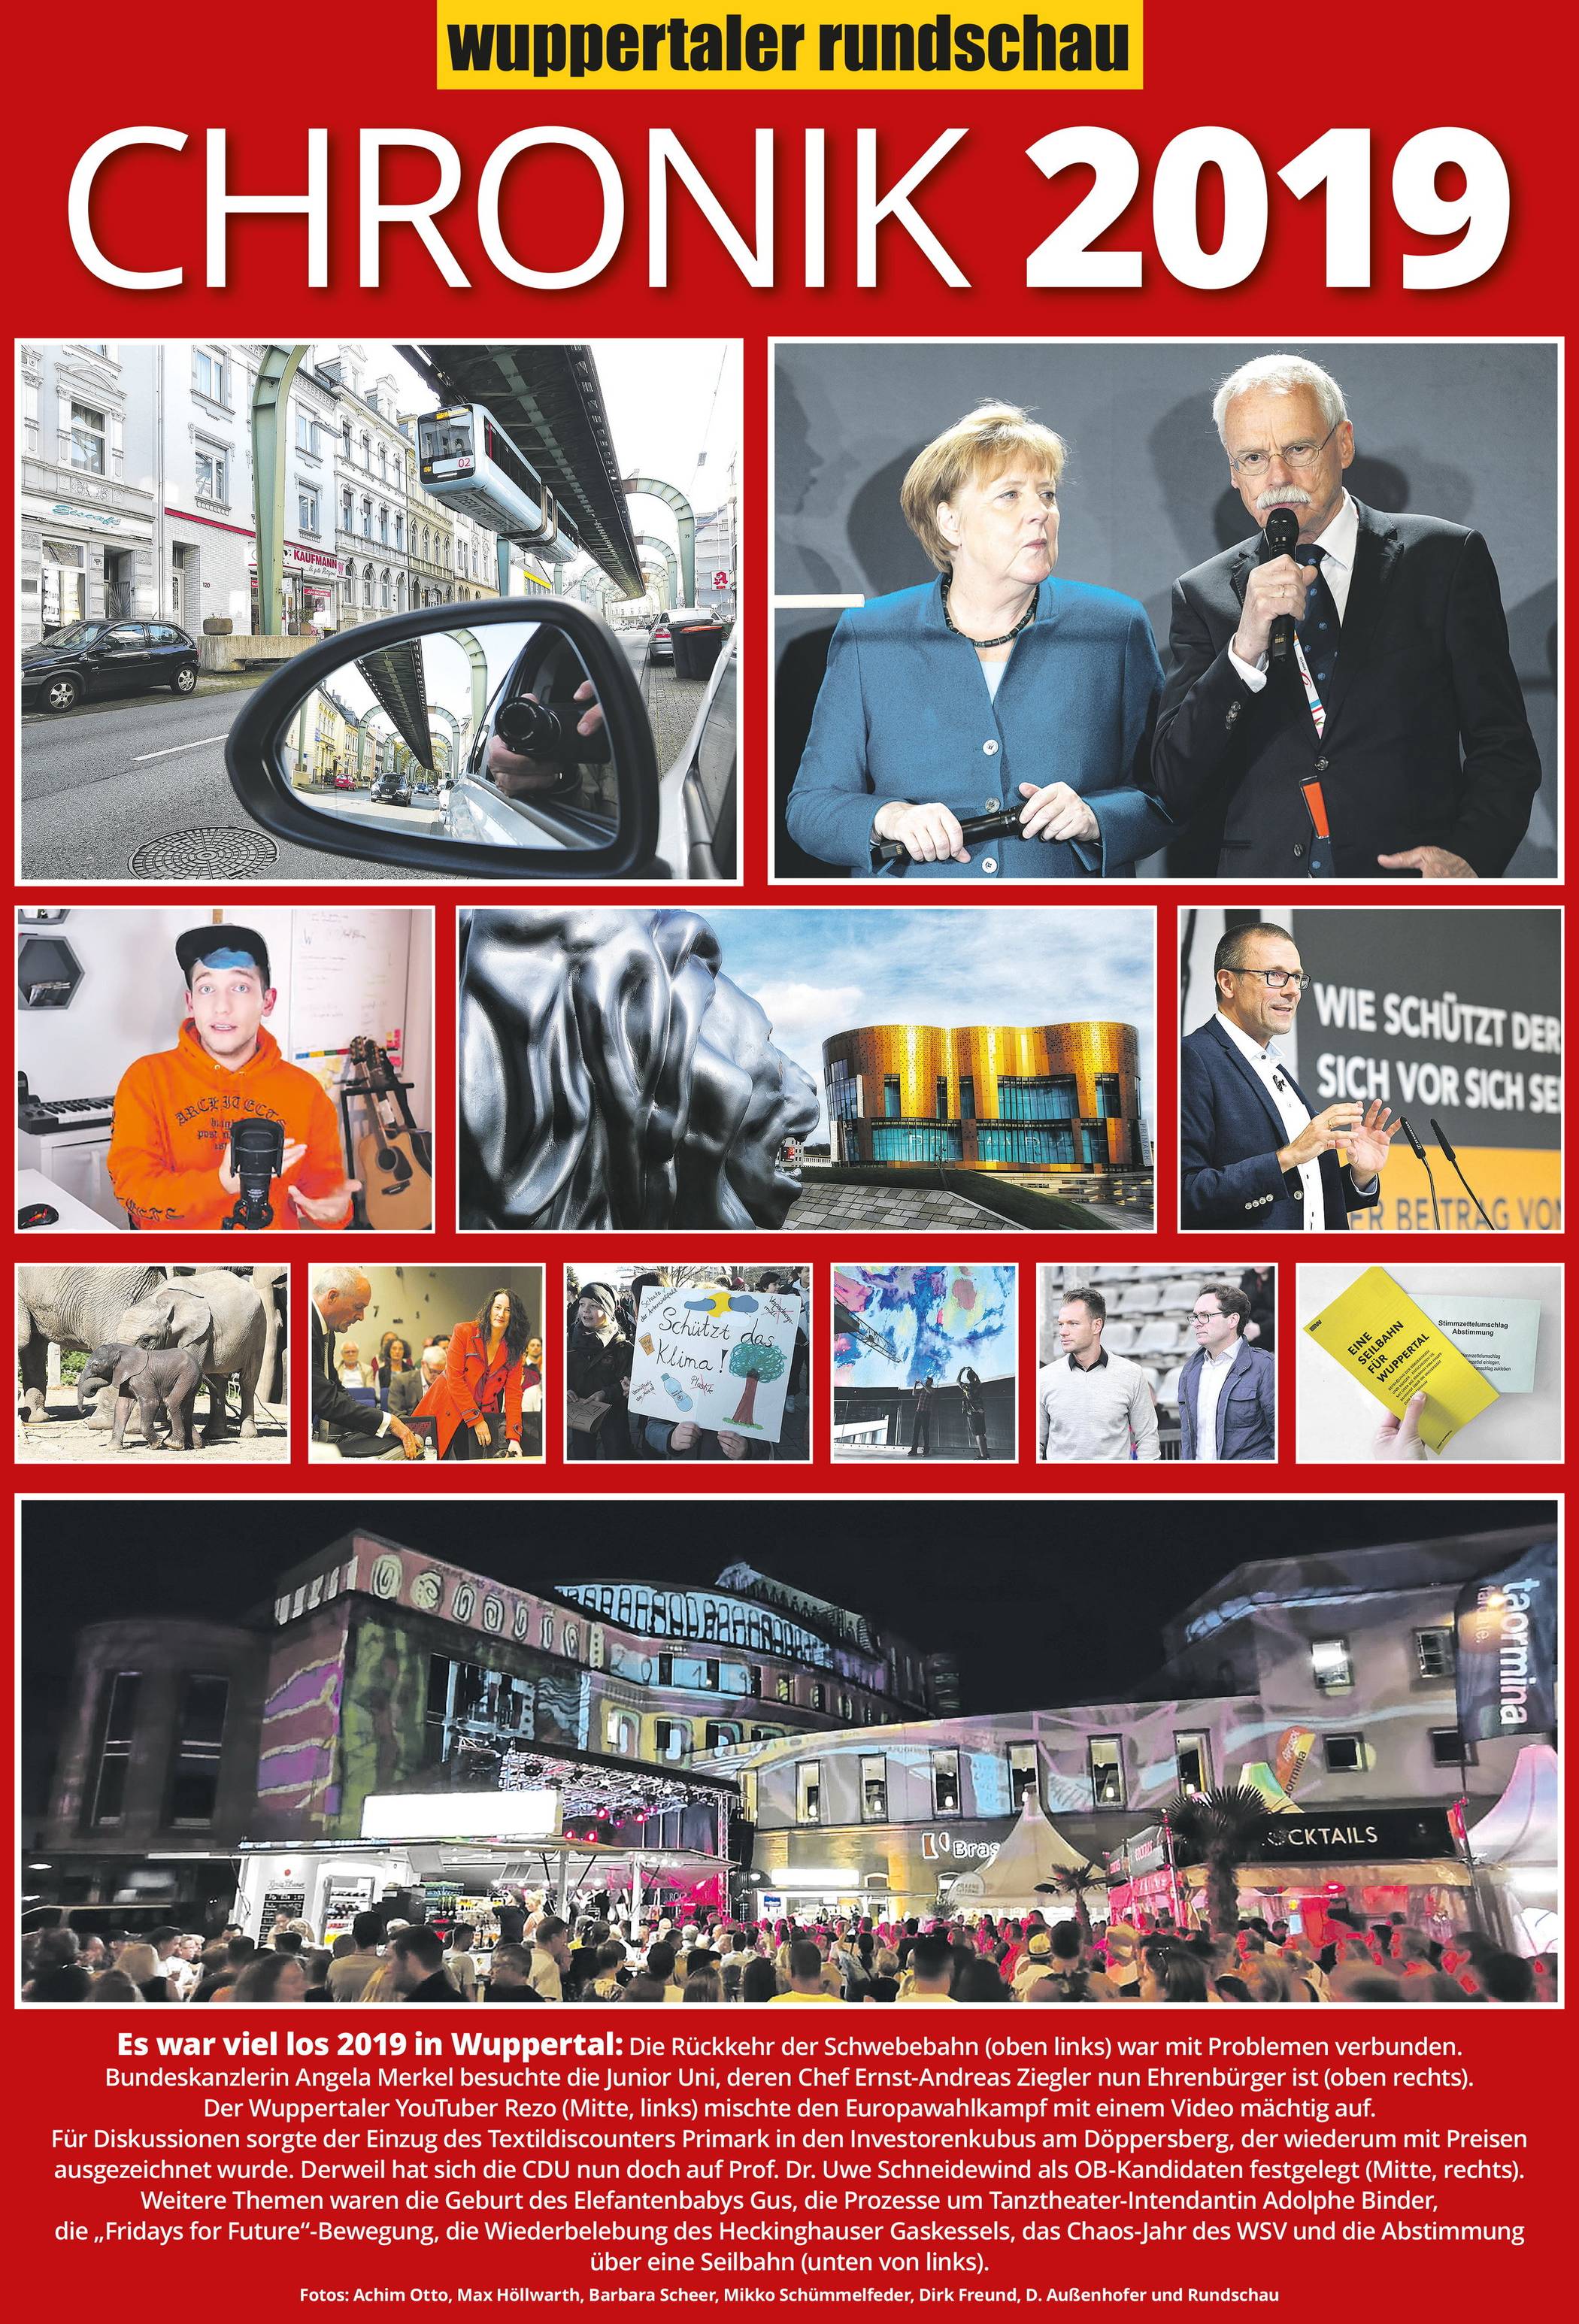 Wuppertals Chronik 2019: R wie Reisen